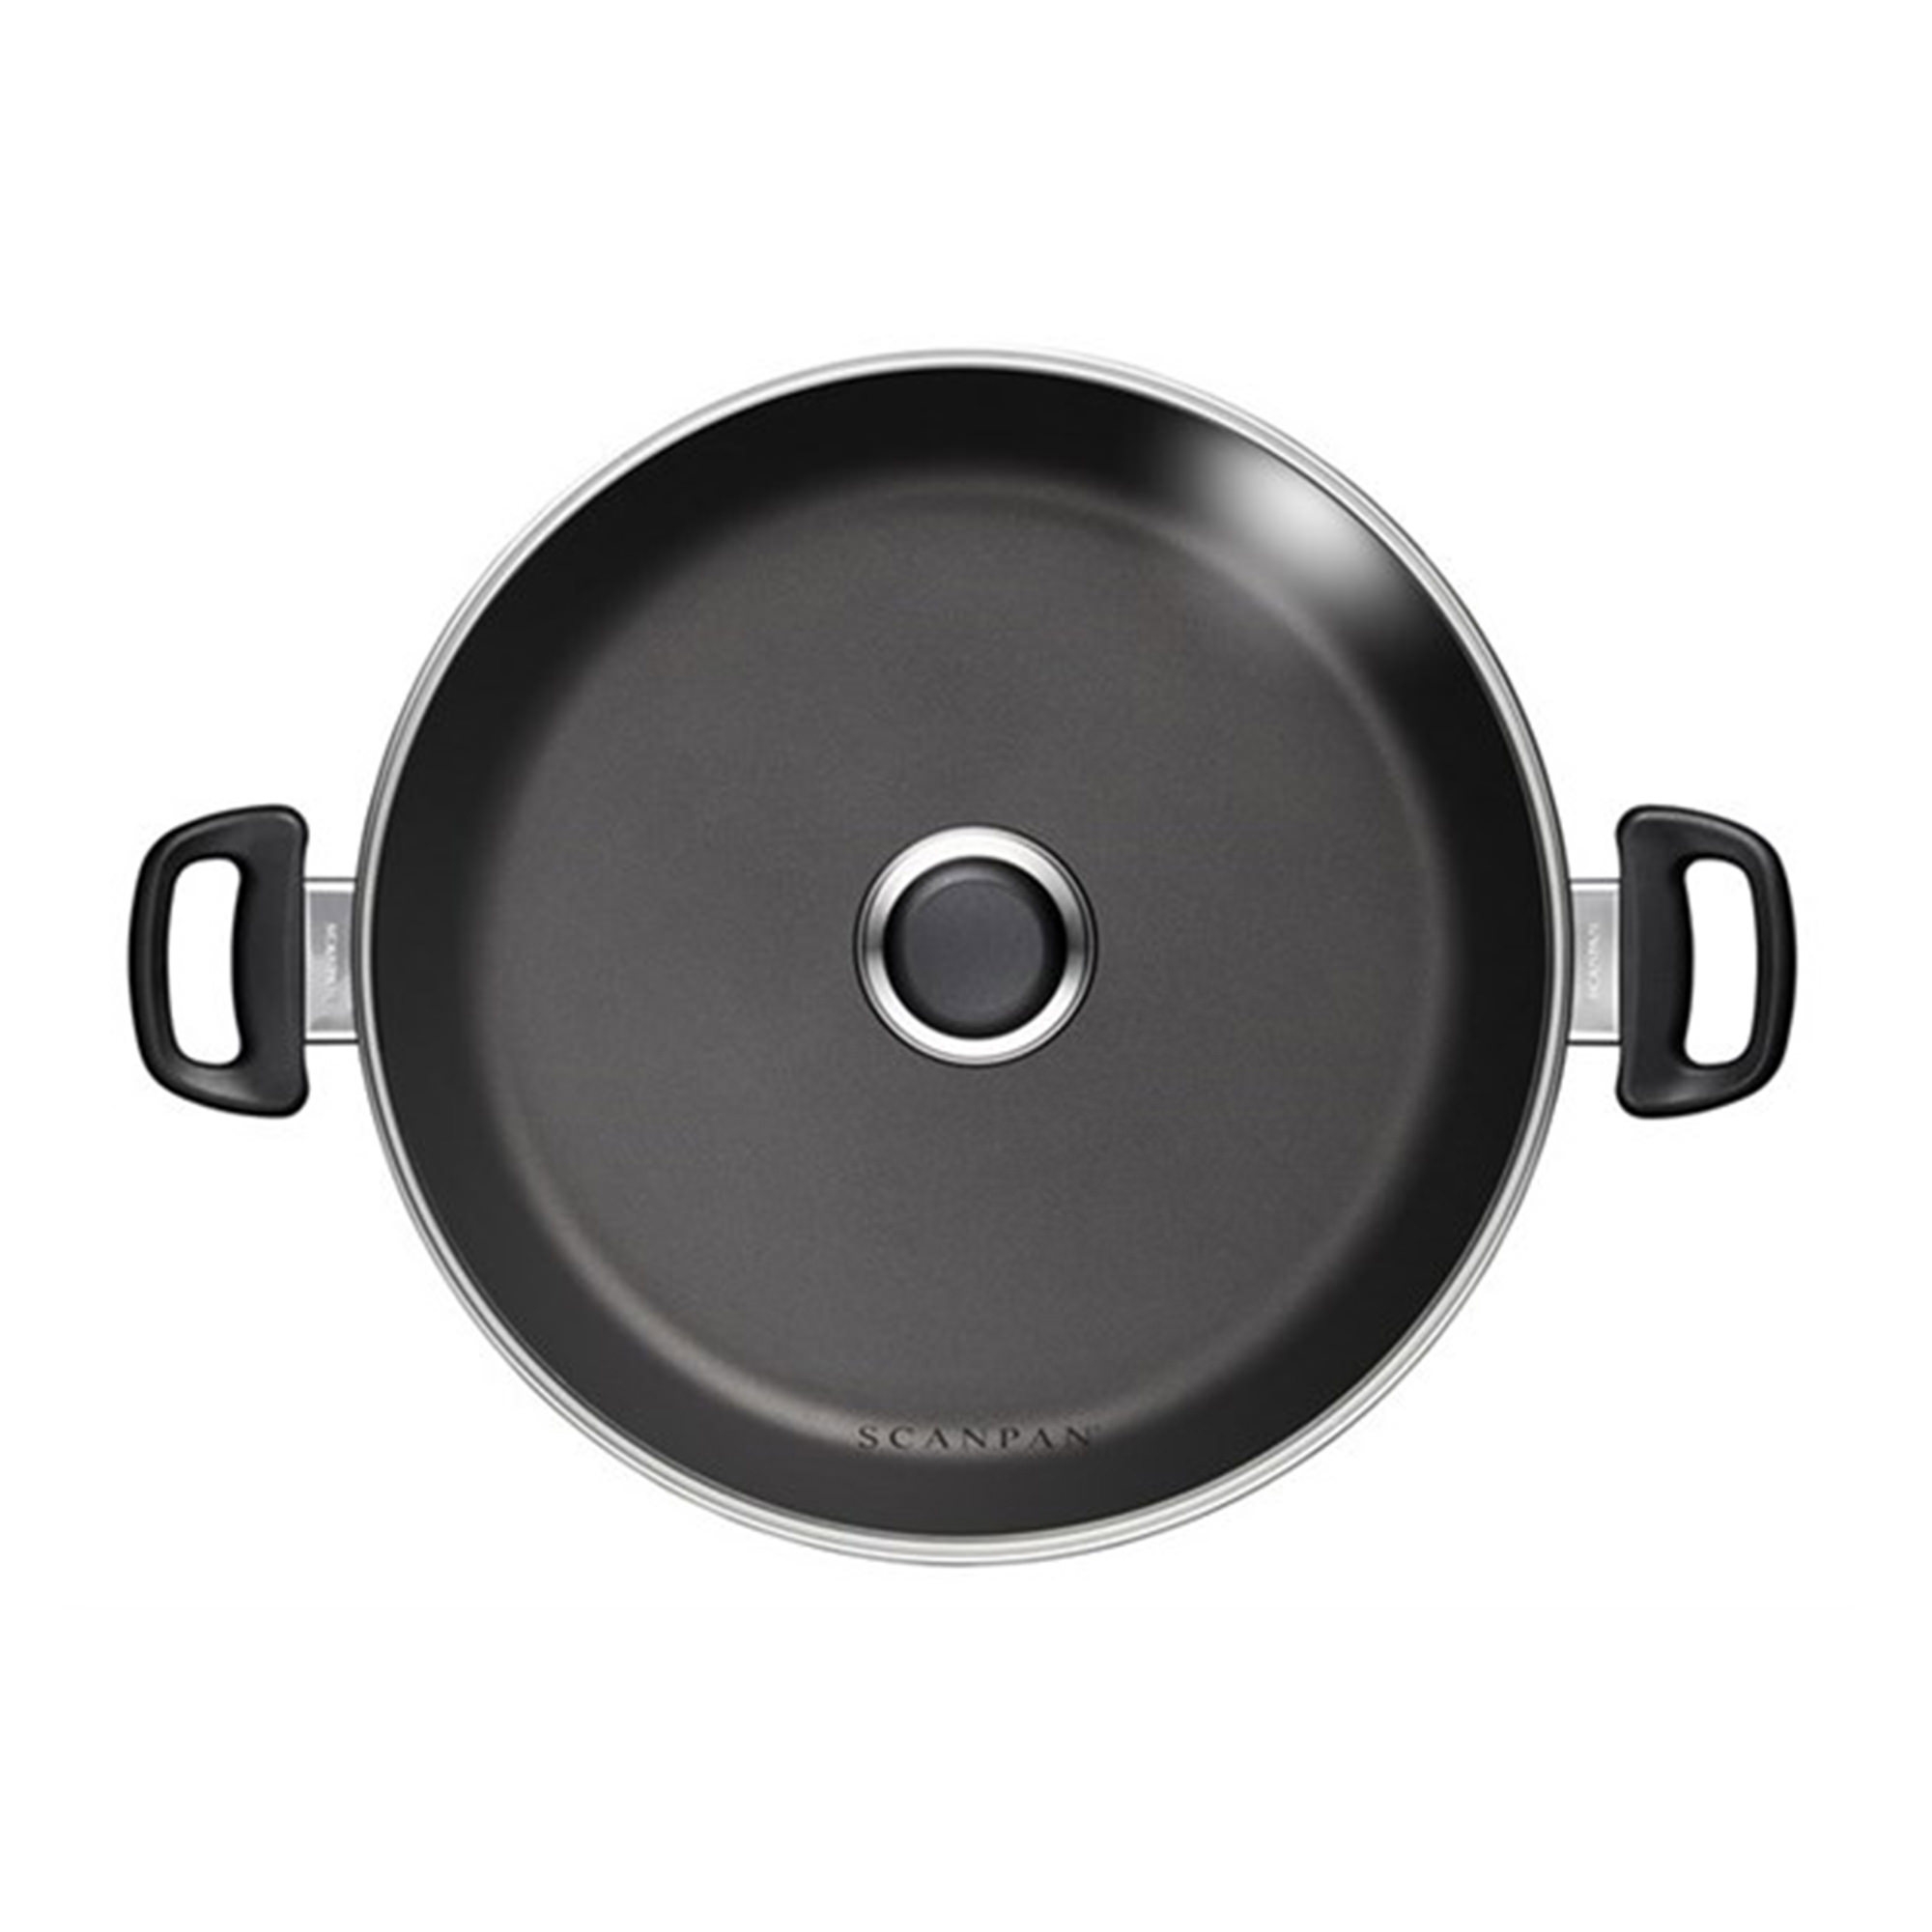 Scanpan Classic Induction Stew Pot 32cm - 7.5L Image 2